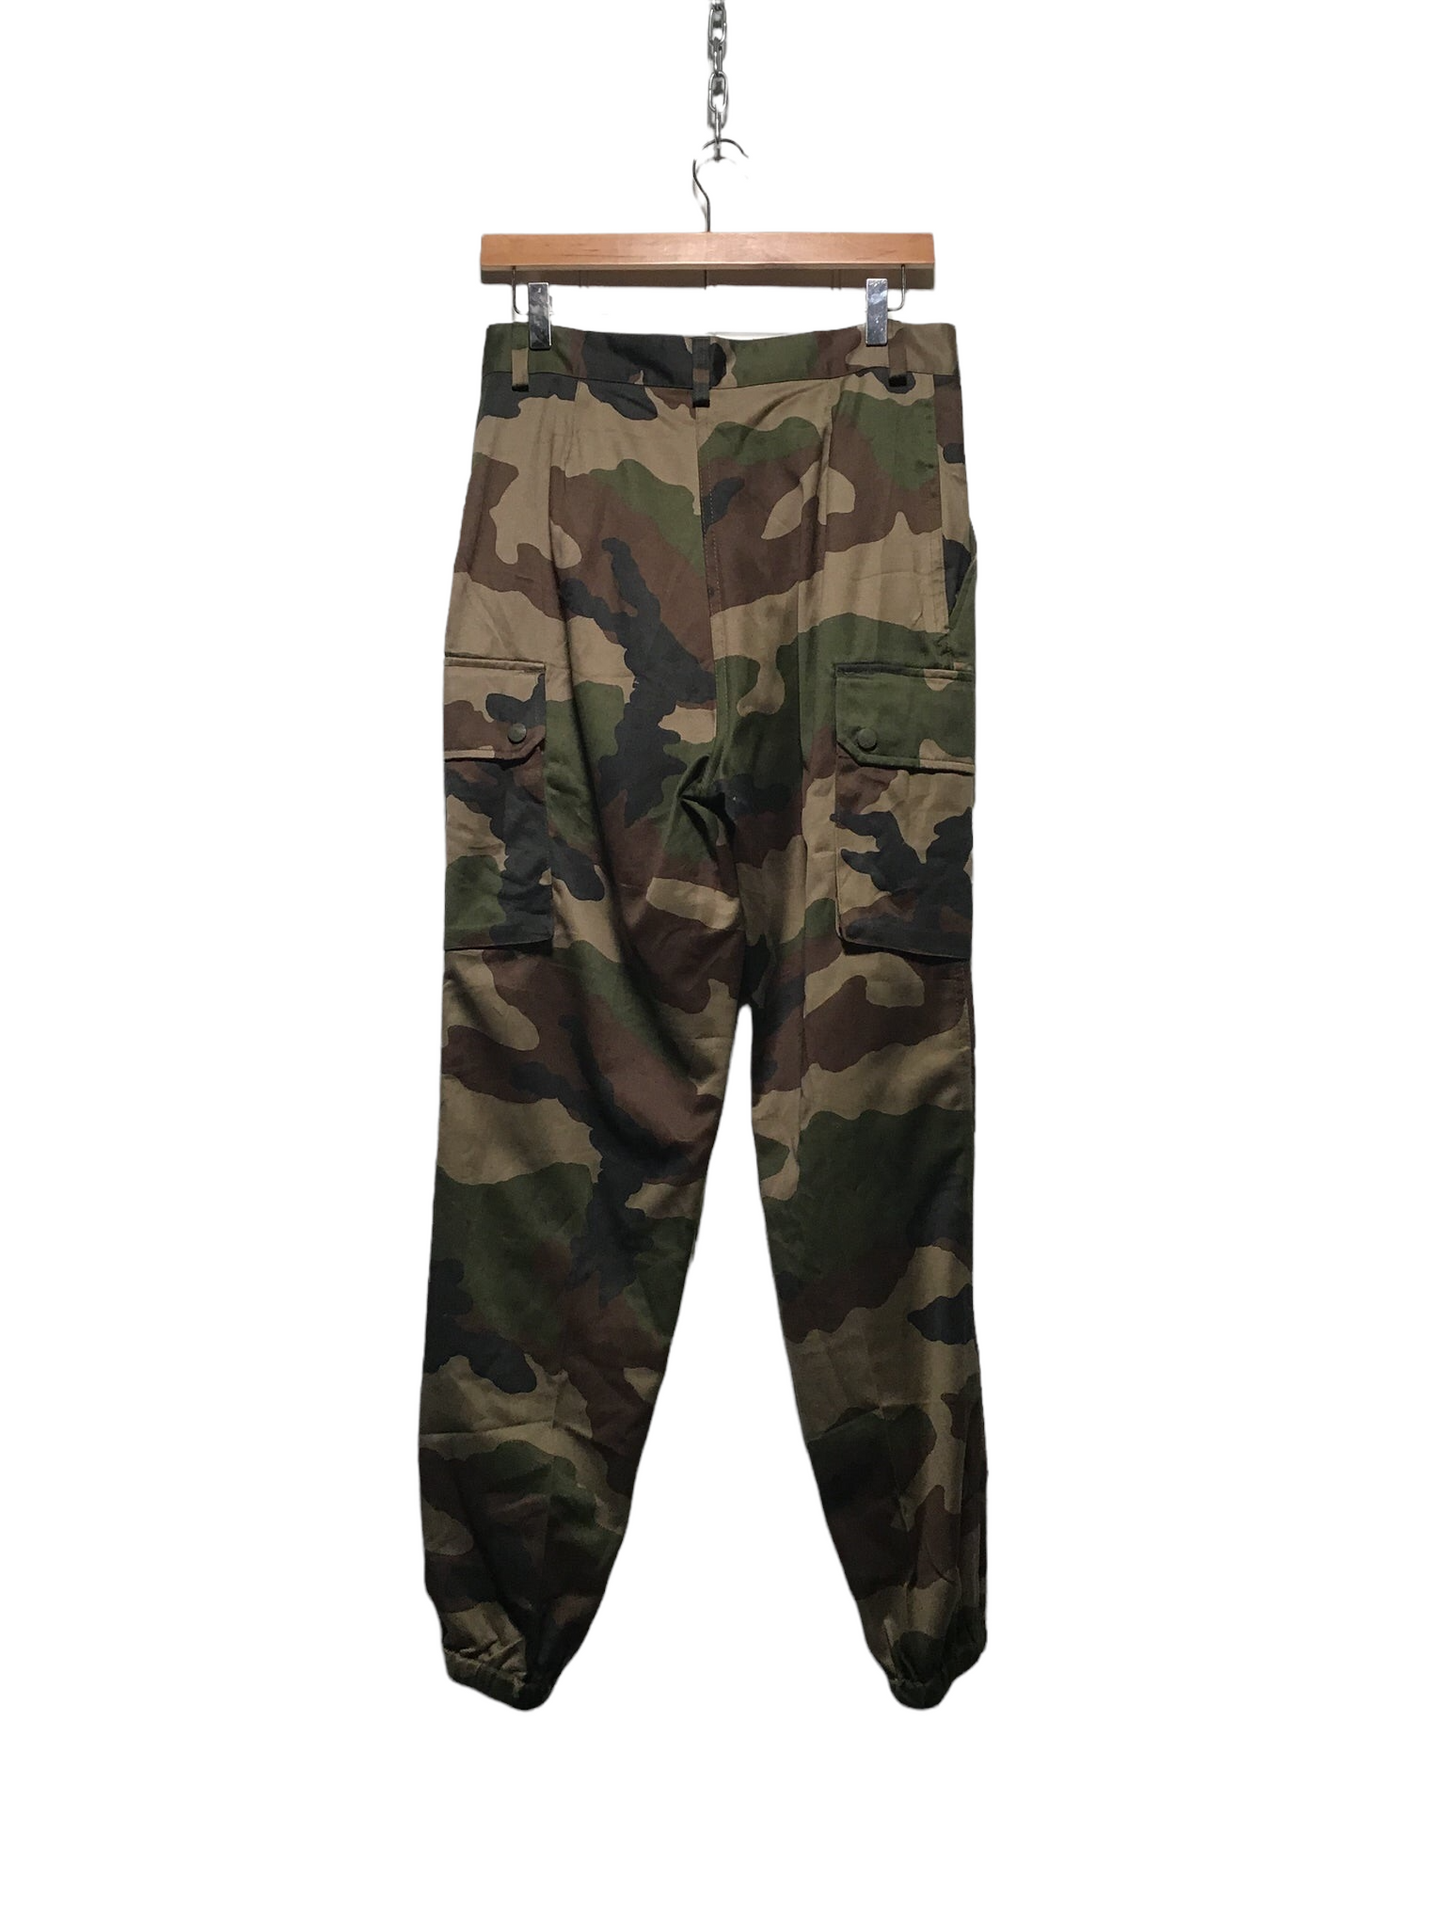 Army Pants (30X30)